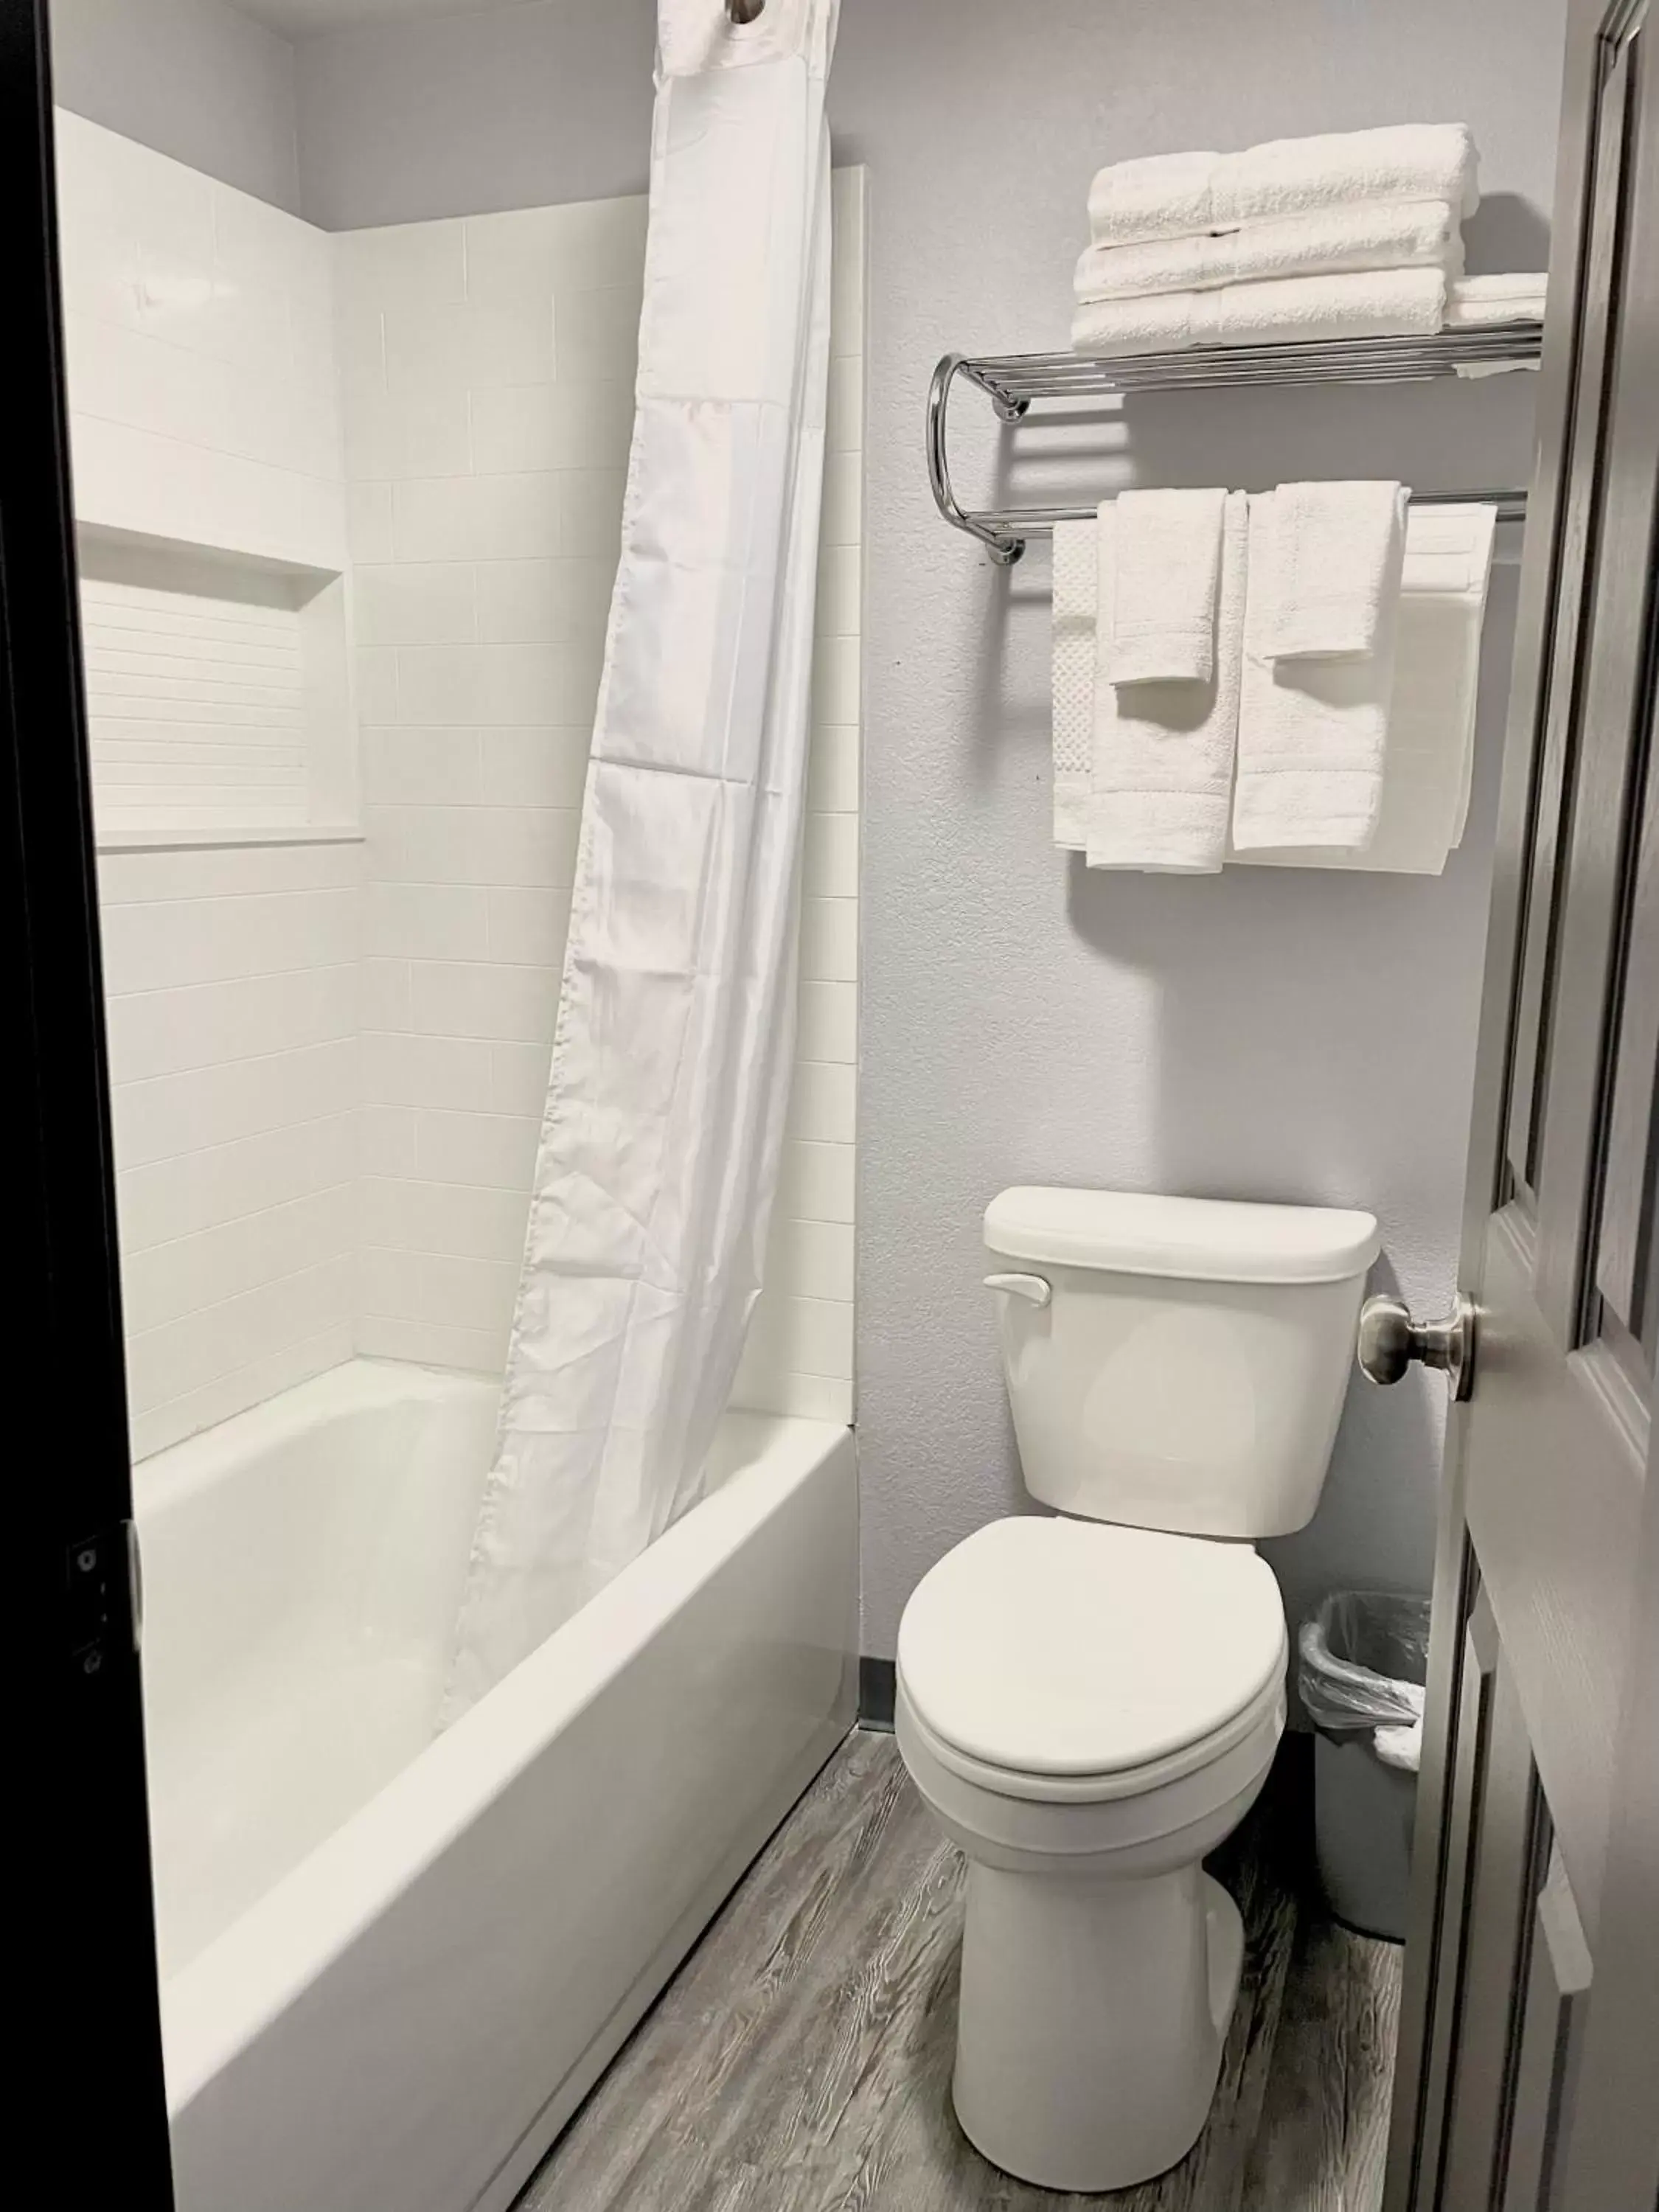 Toilet, Bathroom in Schmidt's Creek Hotel